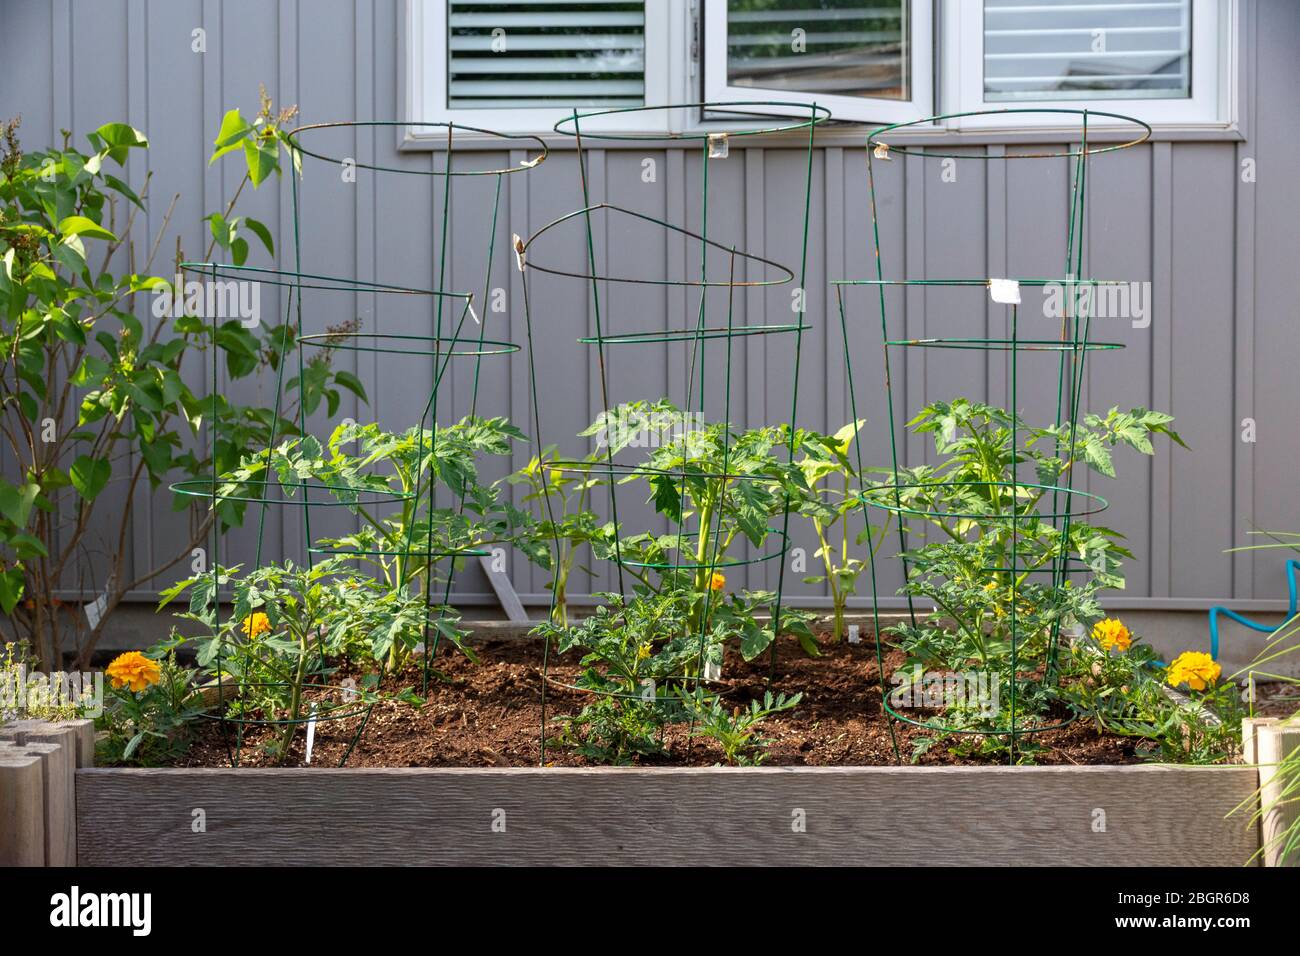 Parte del movimento del vostro proprio alimento di crescita, questo giardino di verdure del cortile contiene i letti sollevati per la coltura delle verdure e delle erbe durante l'estate. Foto Stock